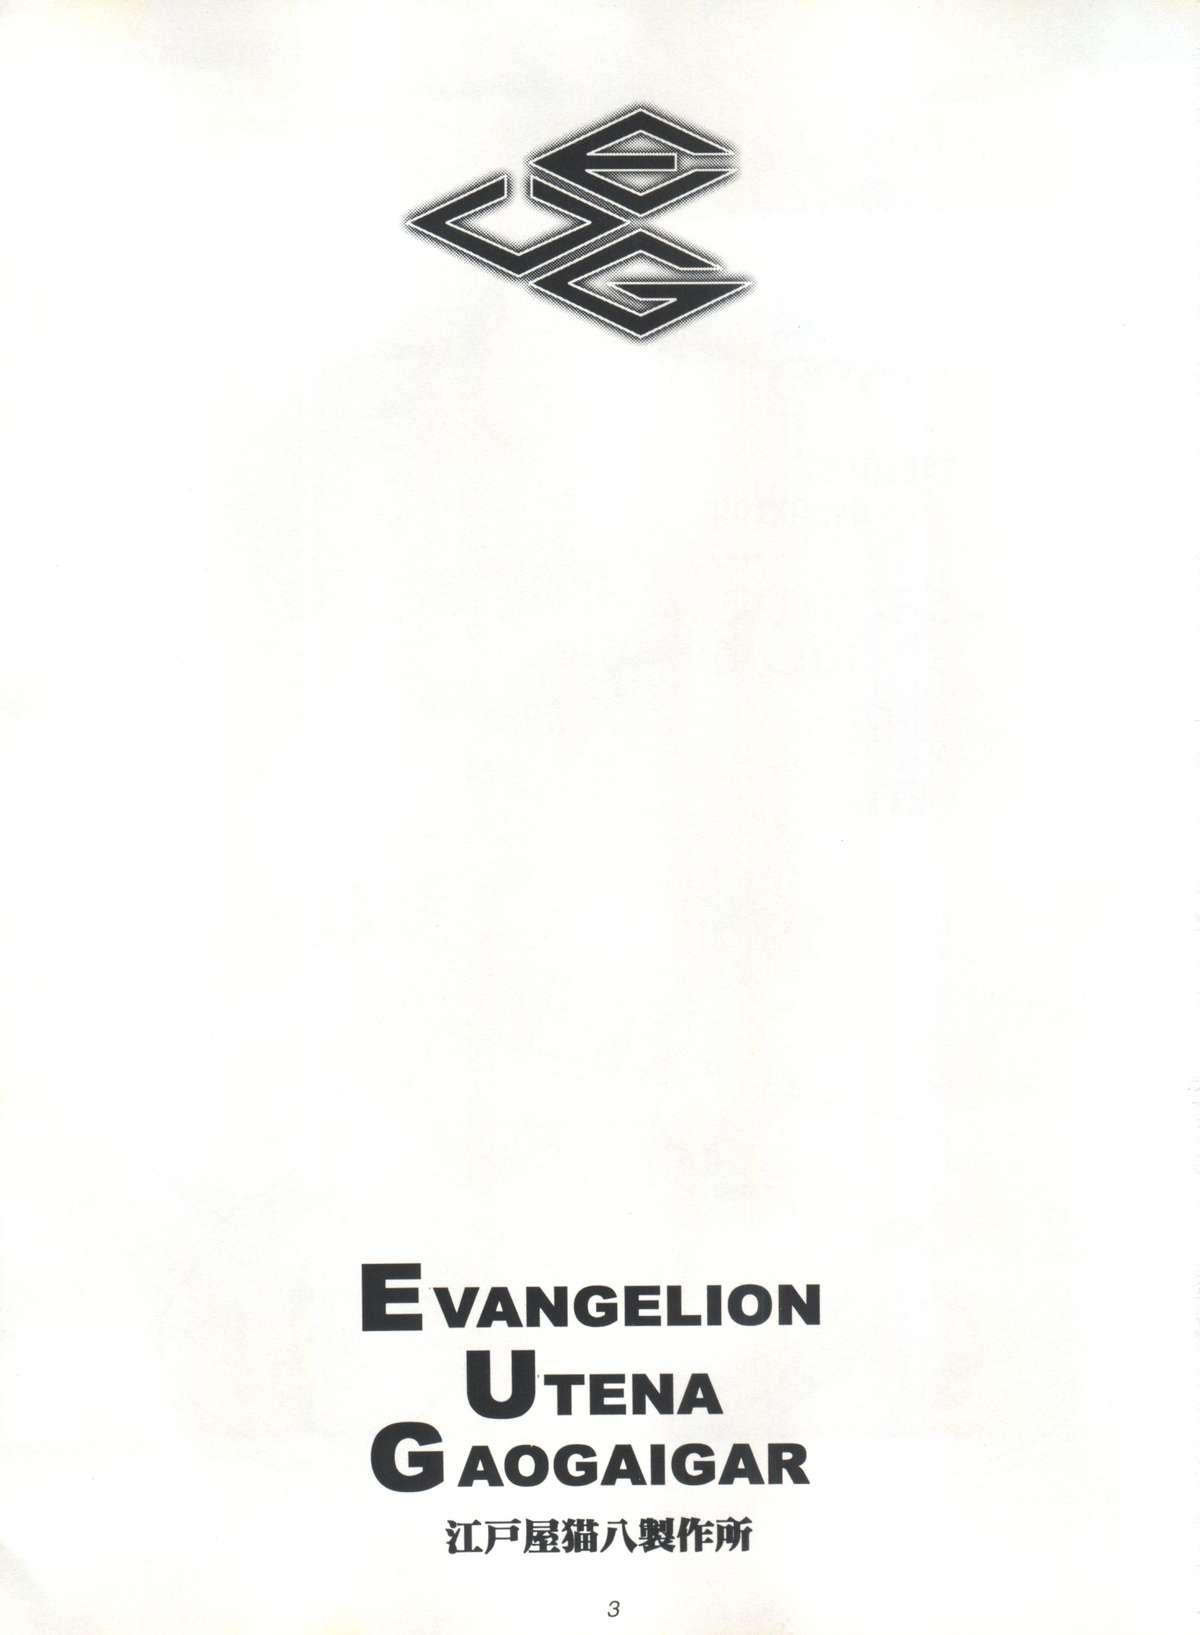 EUG Evangelion Utena Gaogaigar 1